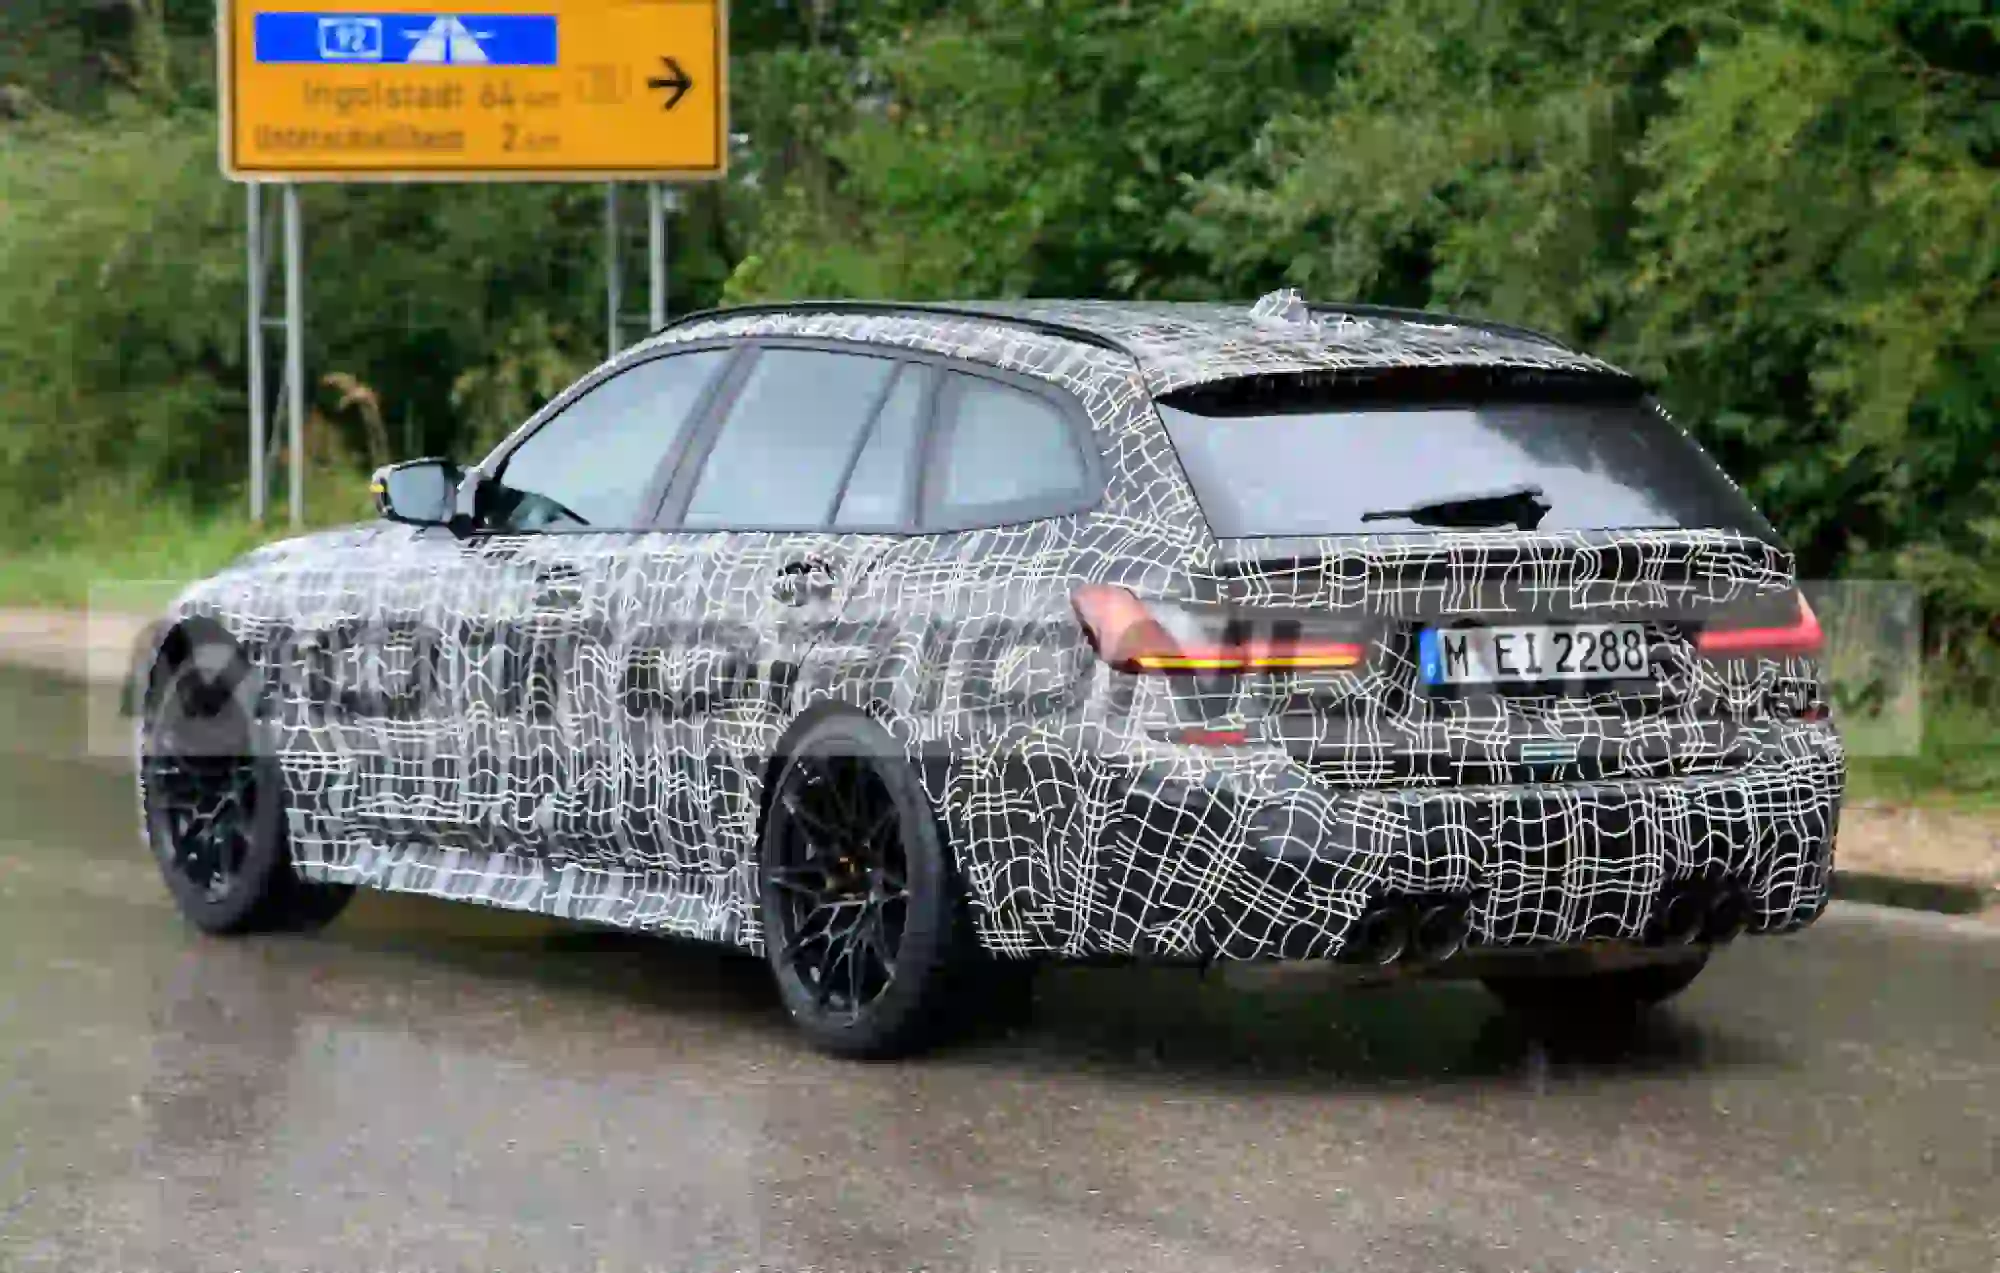 BMW m3 Touring 2020 - foto spia inedite - 10